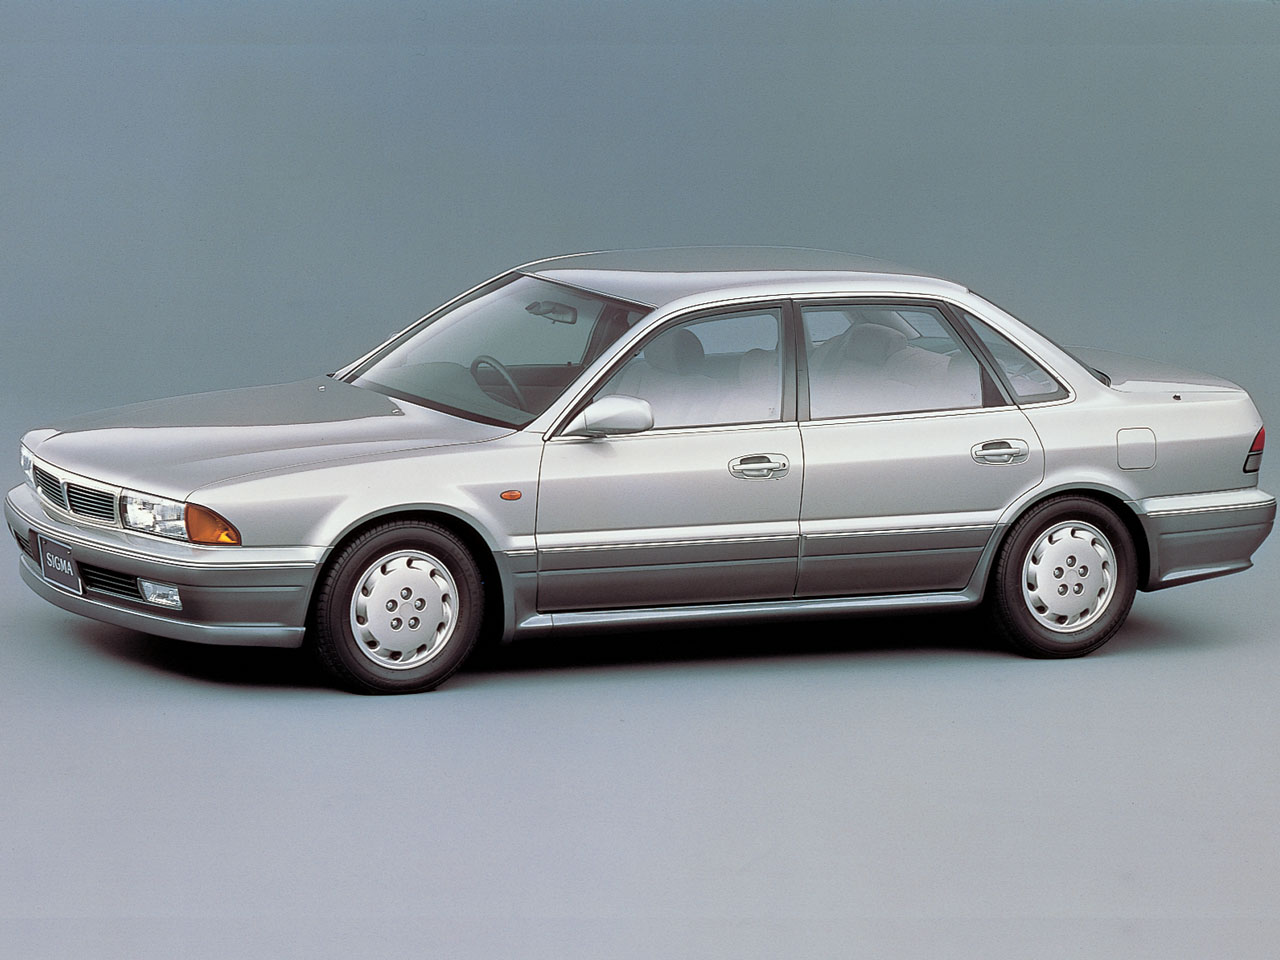 三菱 シグマ 1990年モデル 新車画像